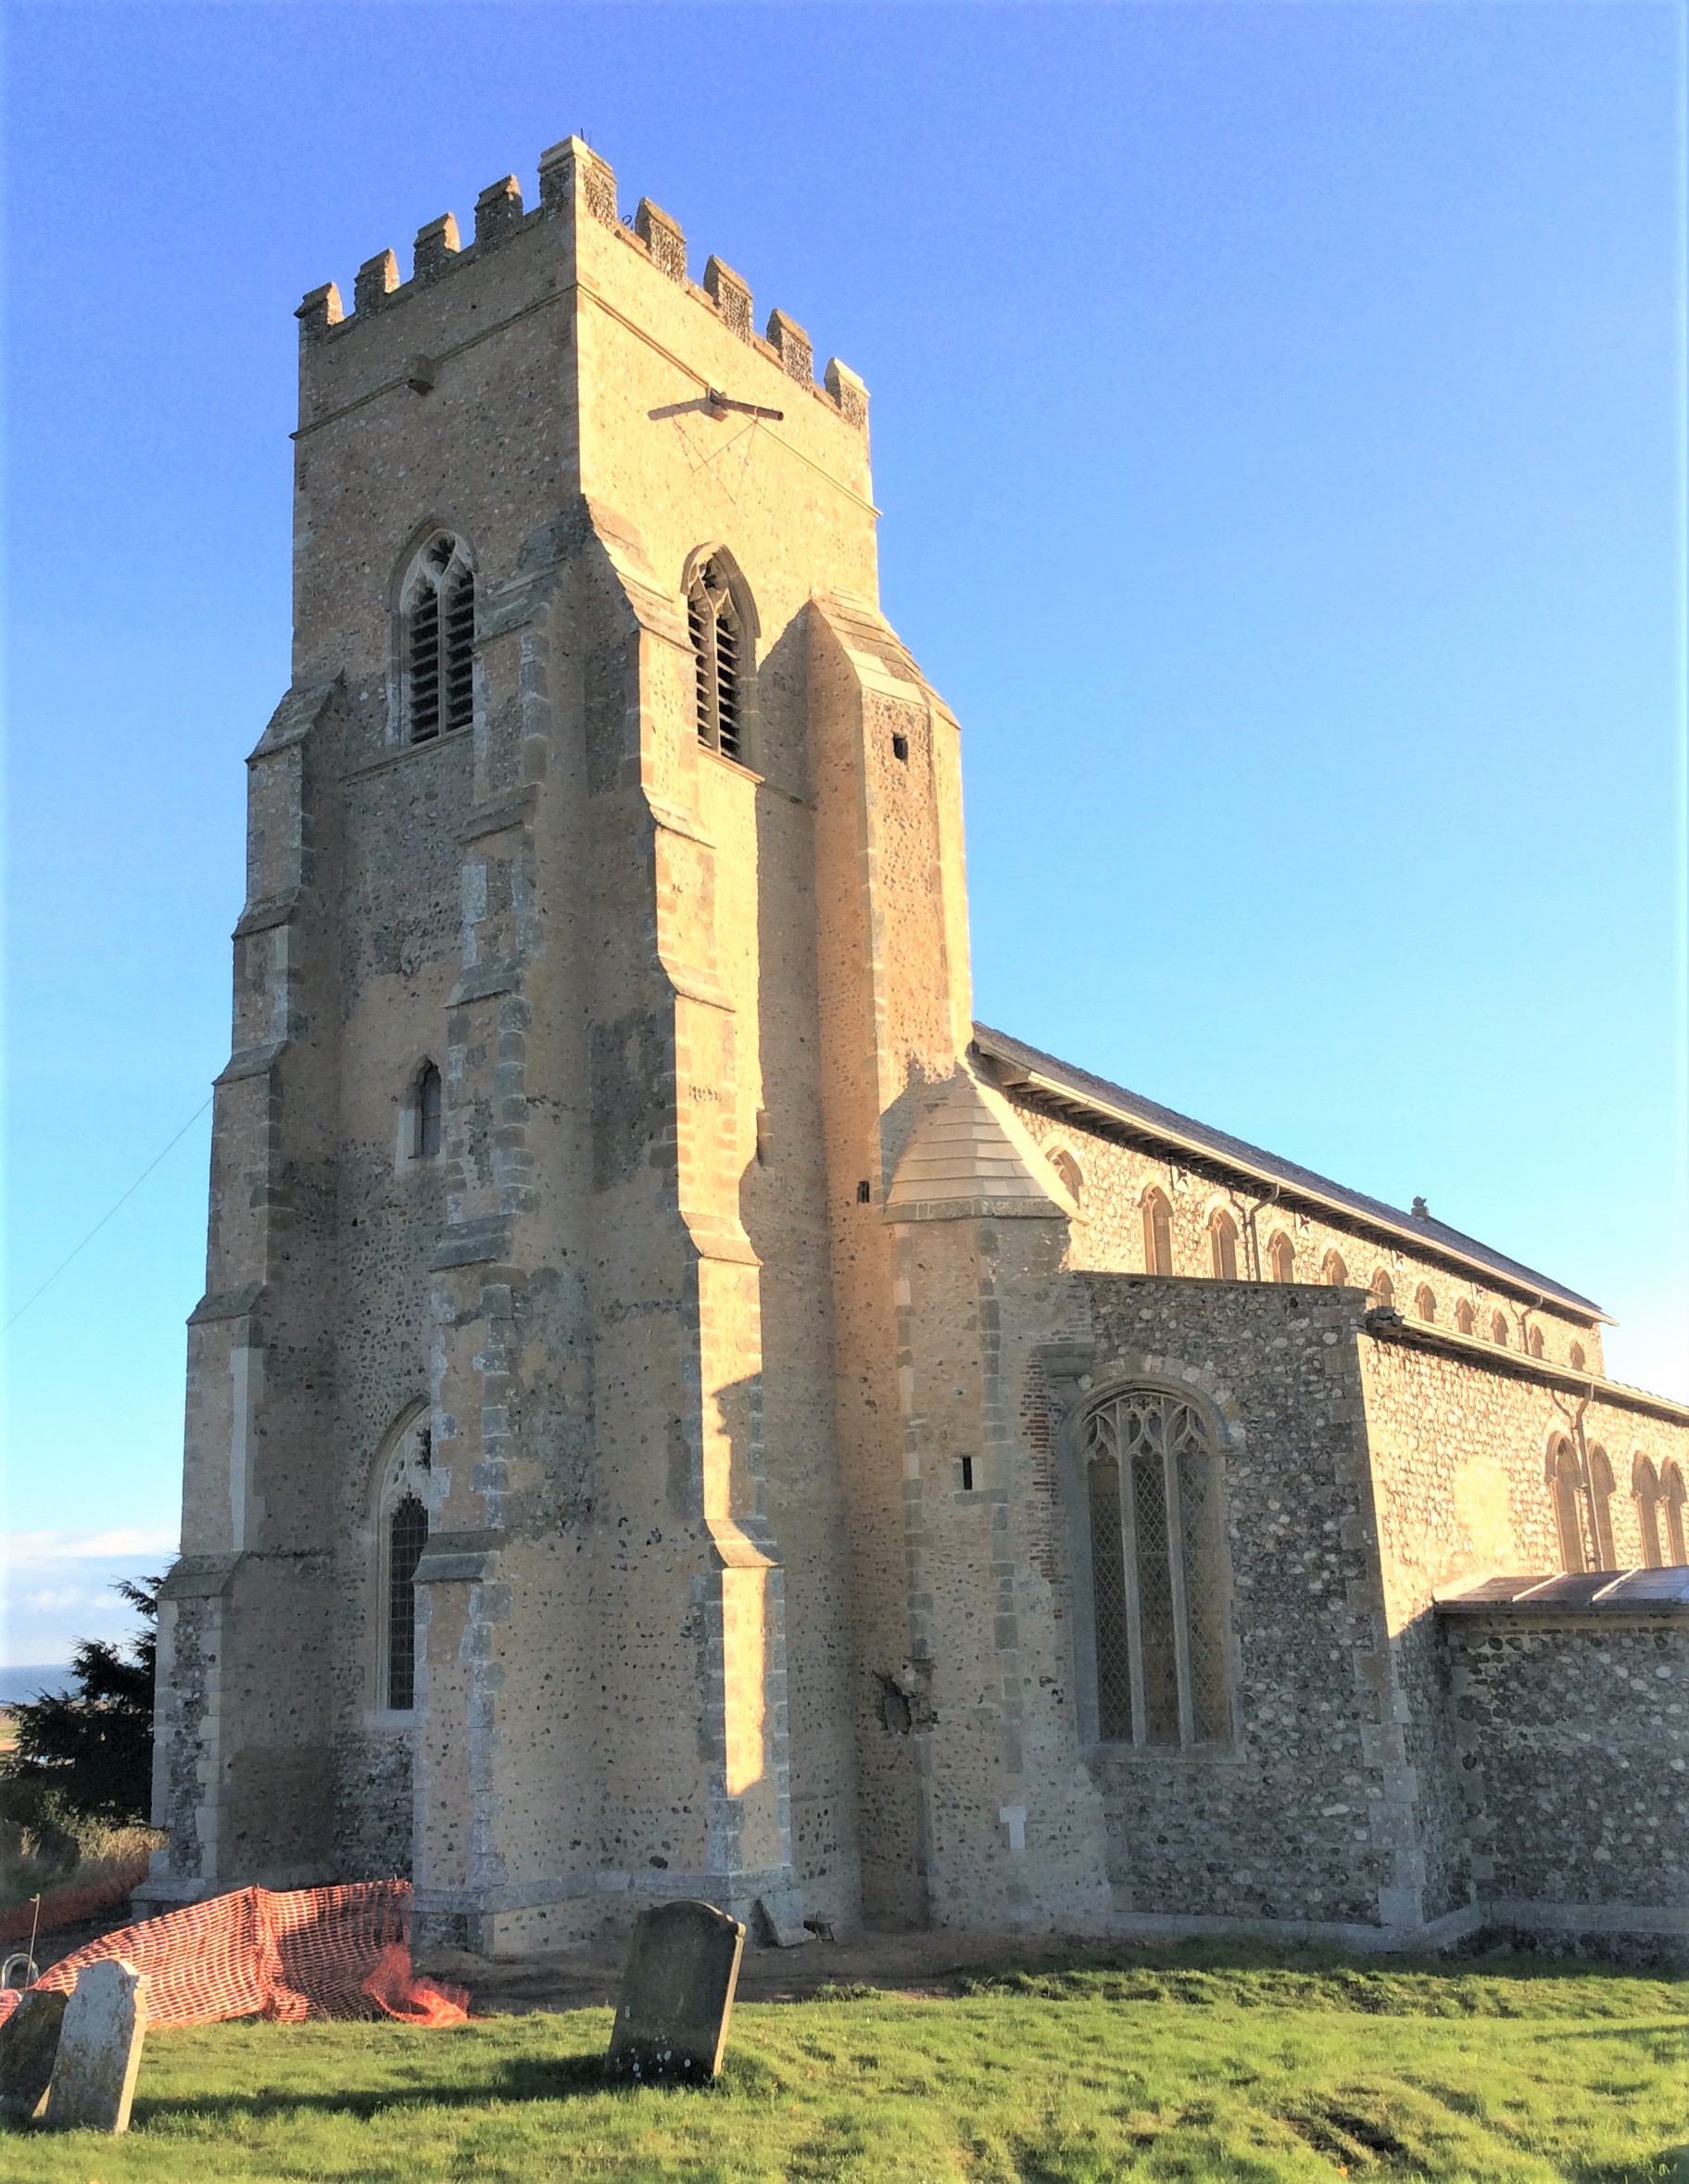 St Nicholas Church Tower